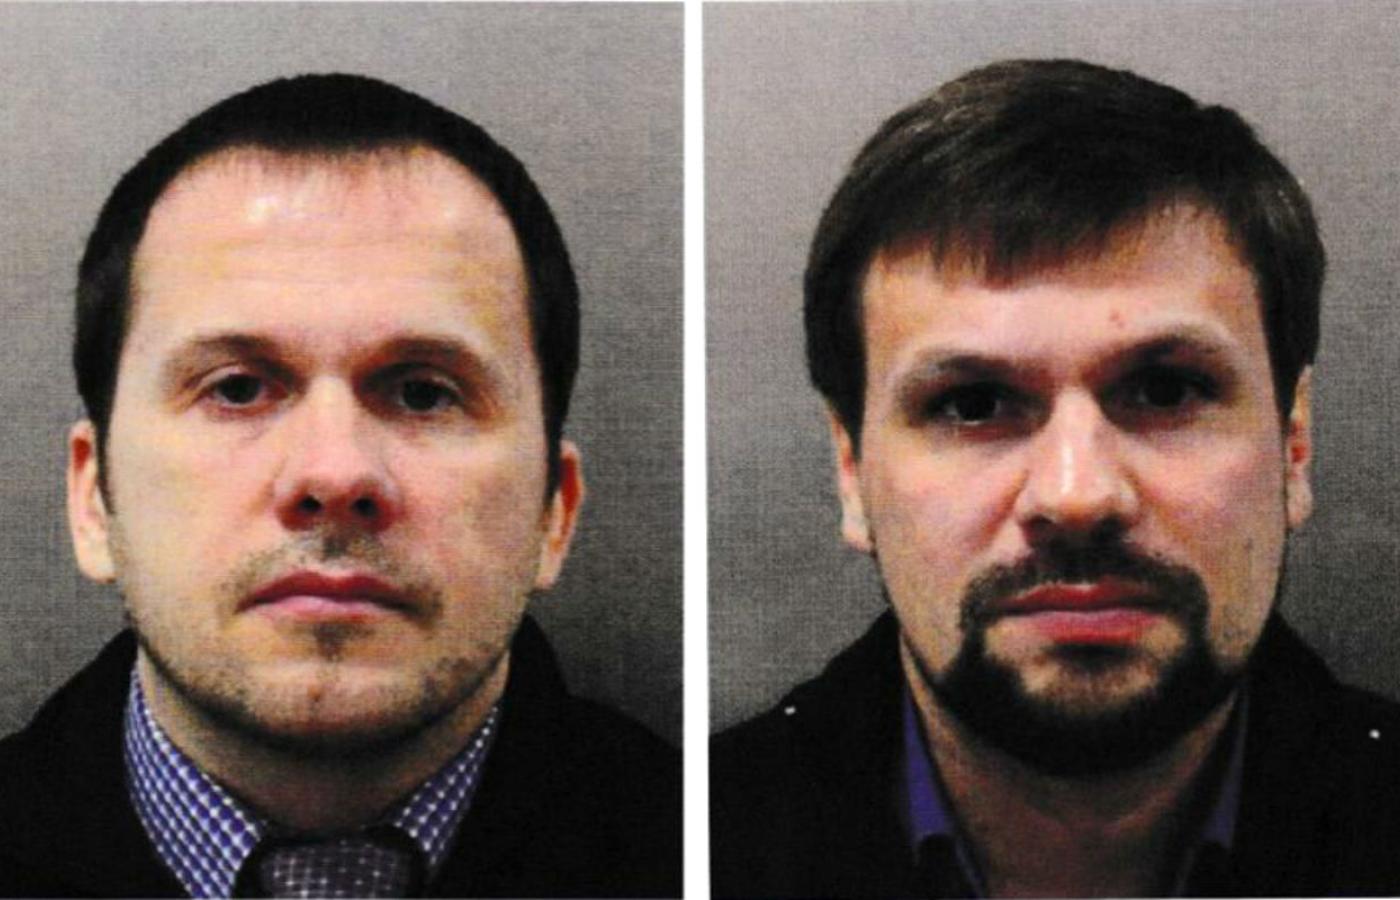 Podejrzani o otrucie Skripalów: od lewej Aleksander Myszkin vel Pietrow oraz pułkownik Anatolij Czepiga vel Boszyrow.